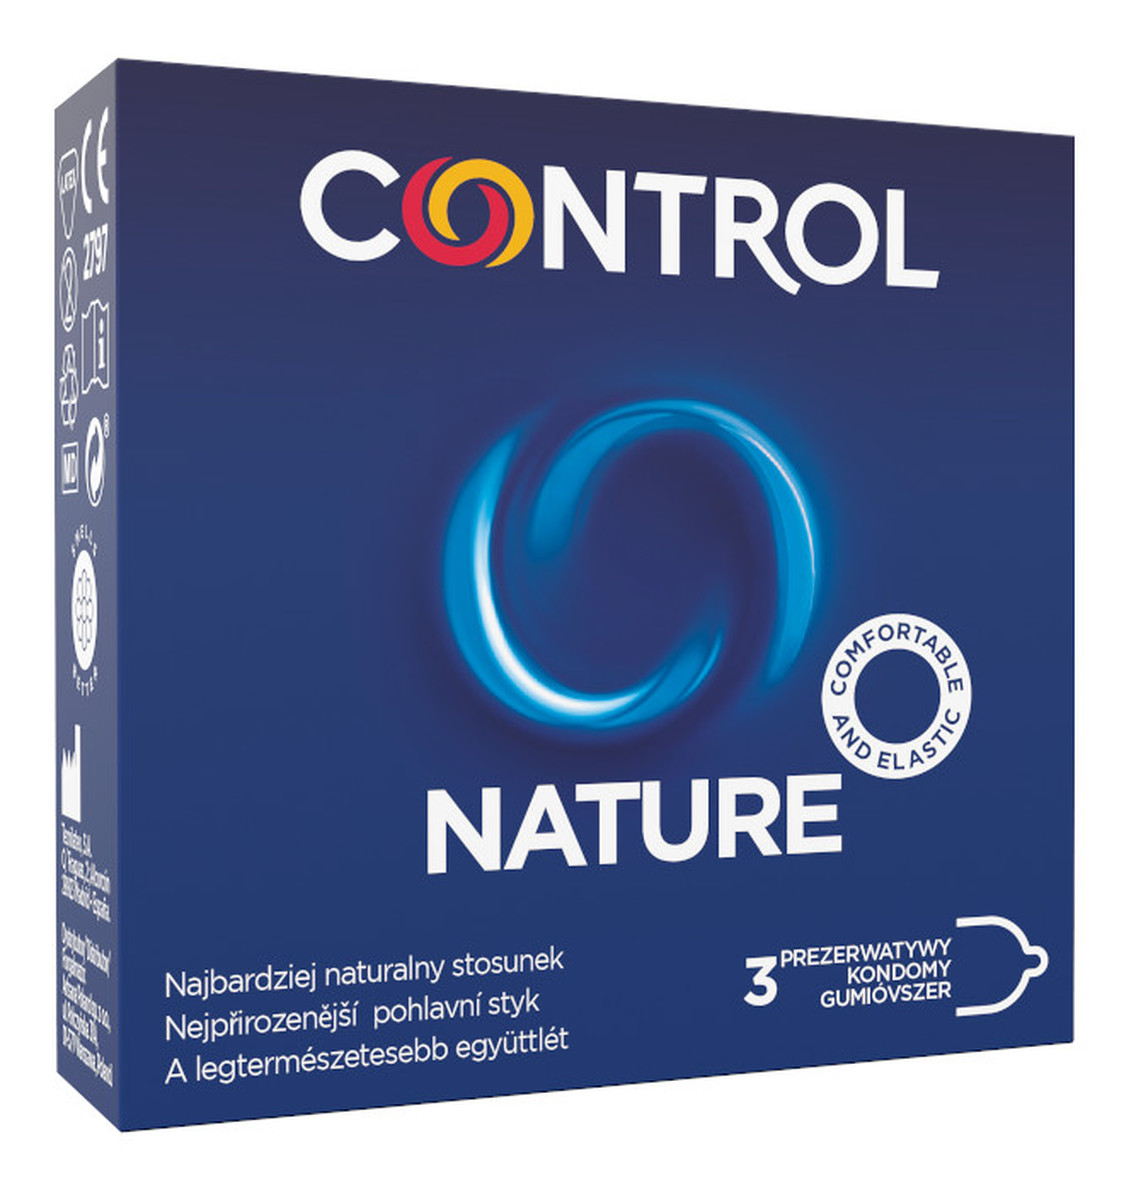 Nature ergonomiczne prezerwatywy z naturalnego lateksu 3szt.